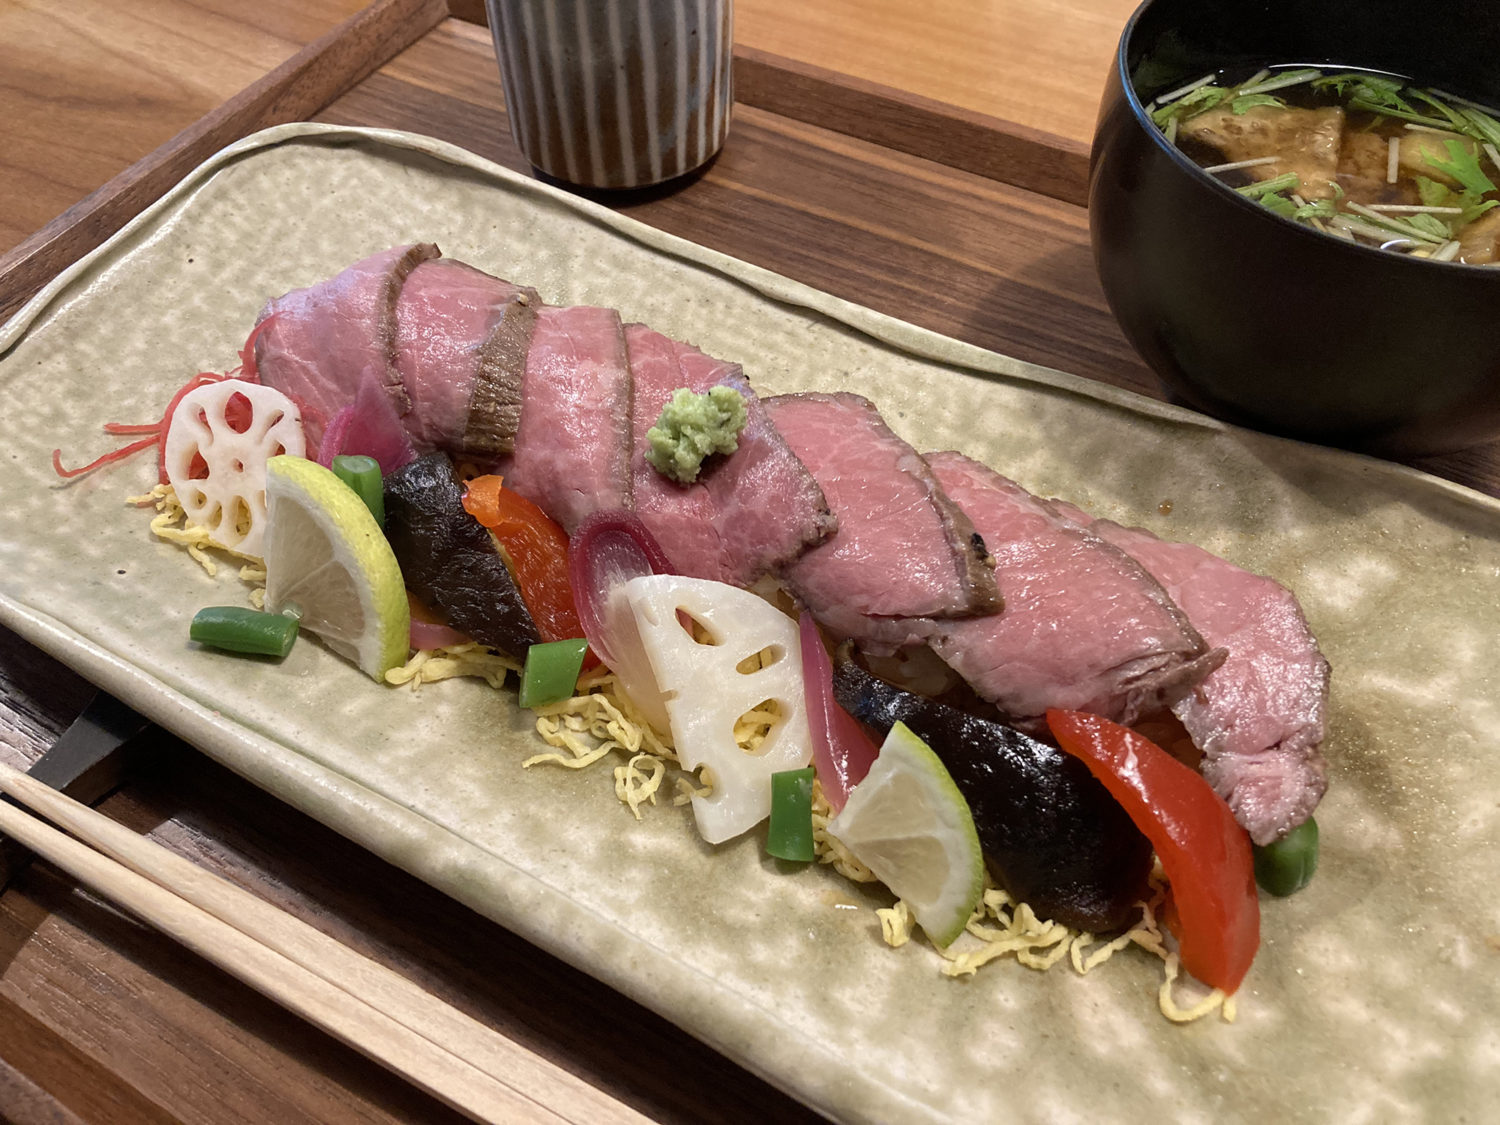 工房レストラン「wakuden MORI」
ローストビーフ寿司